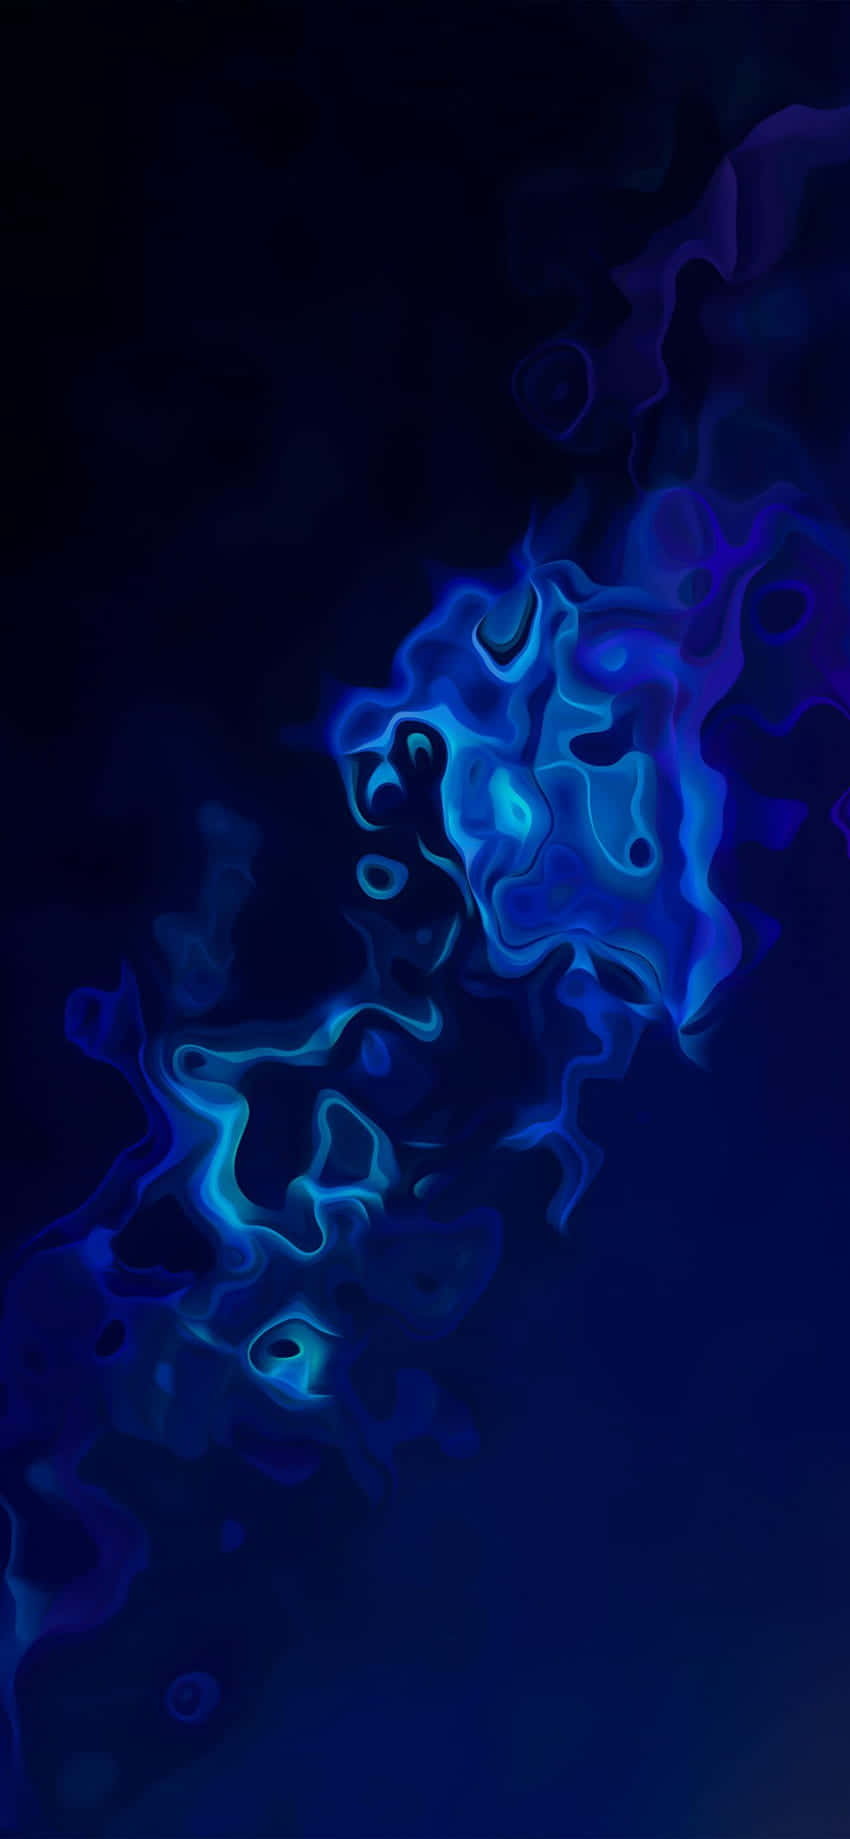 Abstract Blue Fluid Art Wallpaper